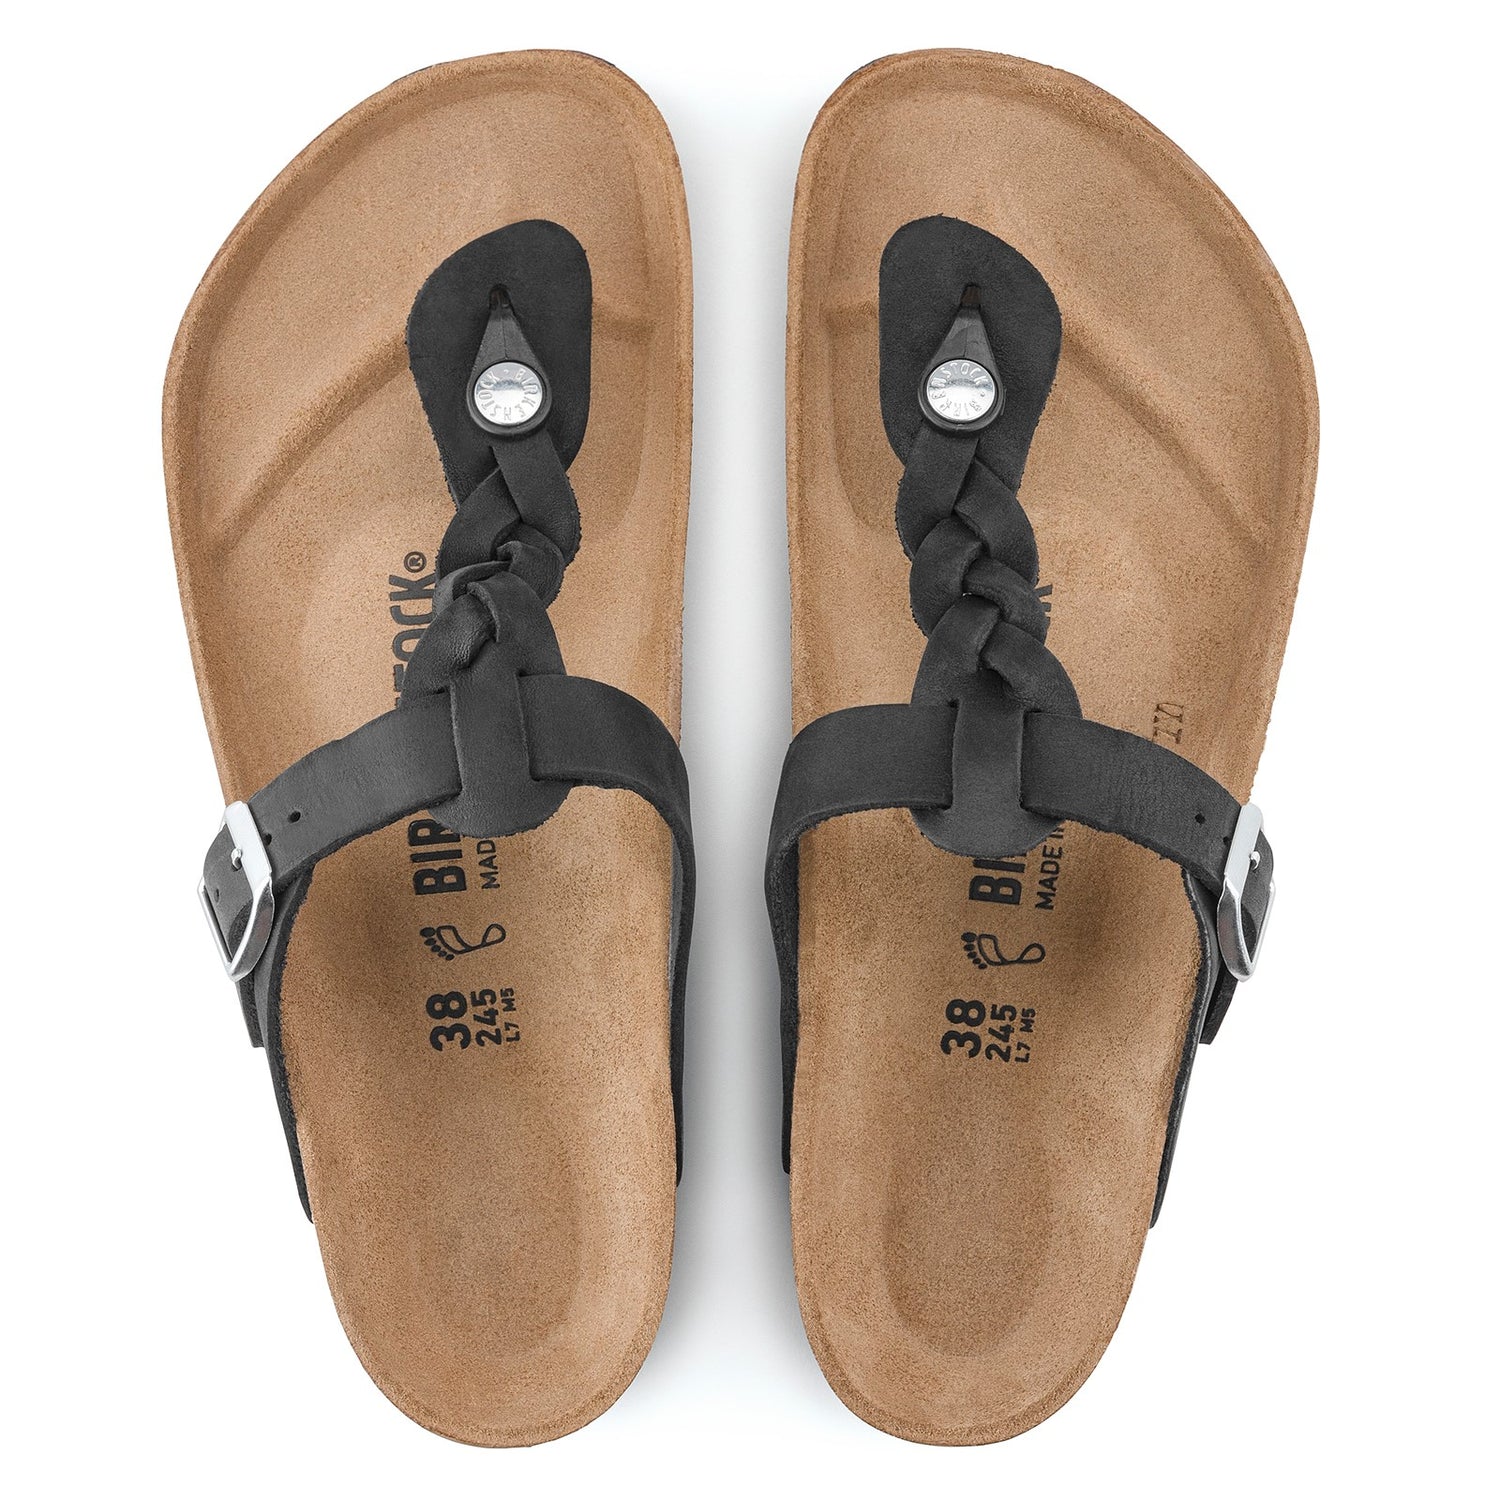 Peltz Shoes  Women's Birkenstock Gizeh Braid Sandal - Regular Width BLACK 1021 349 R